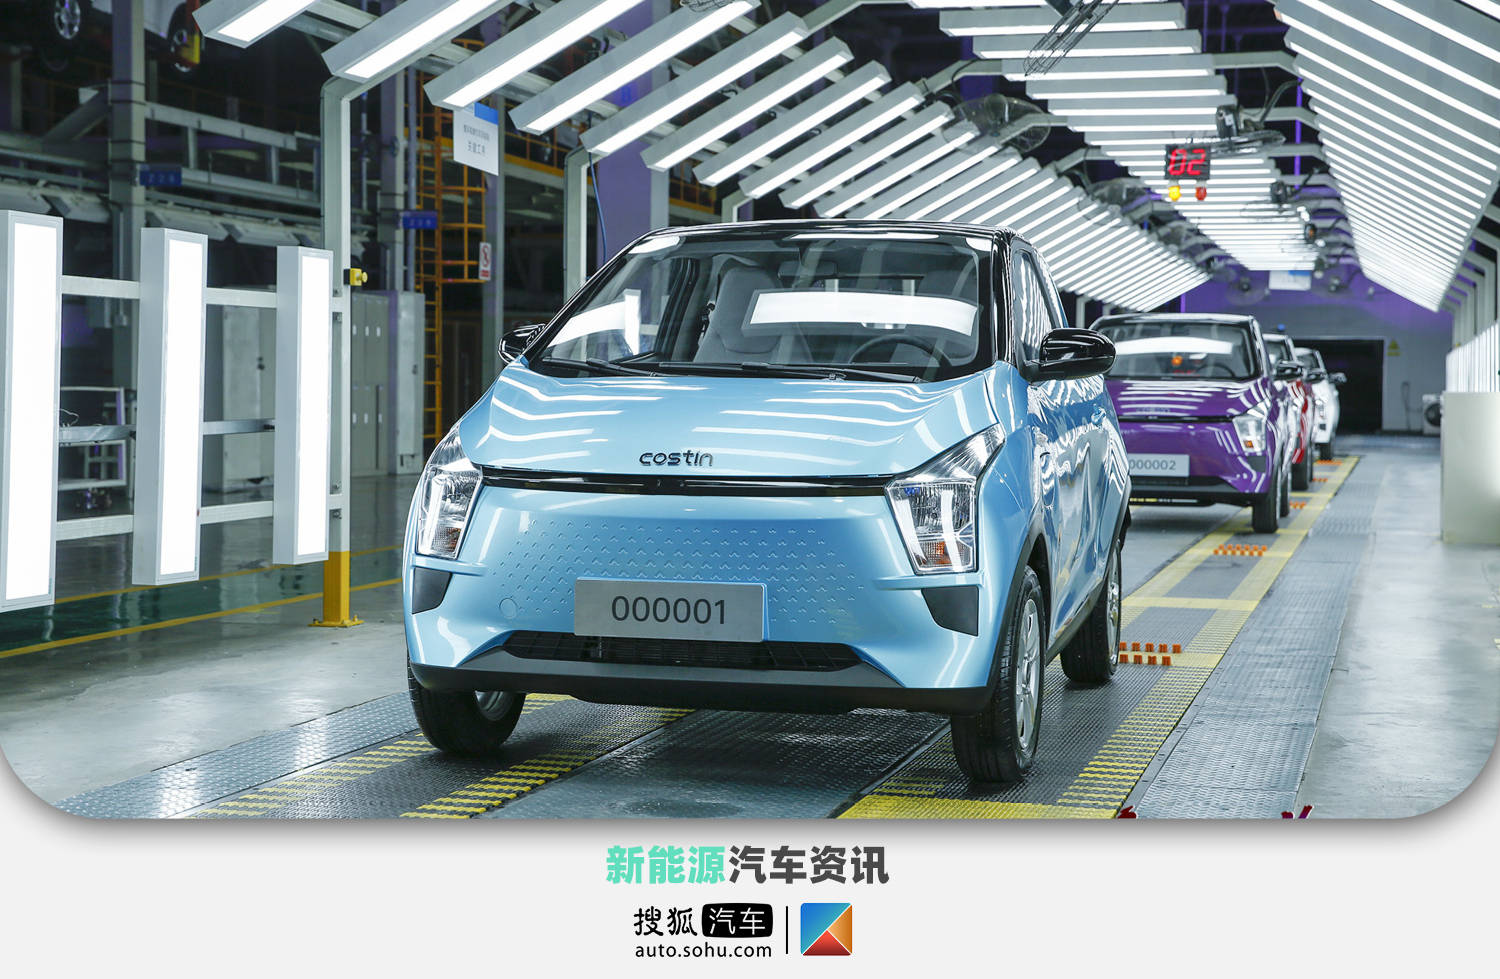 8月6日,奇鲁新能源首款量产车型ec1正式下线